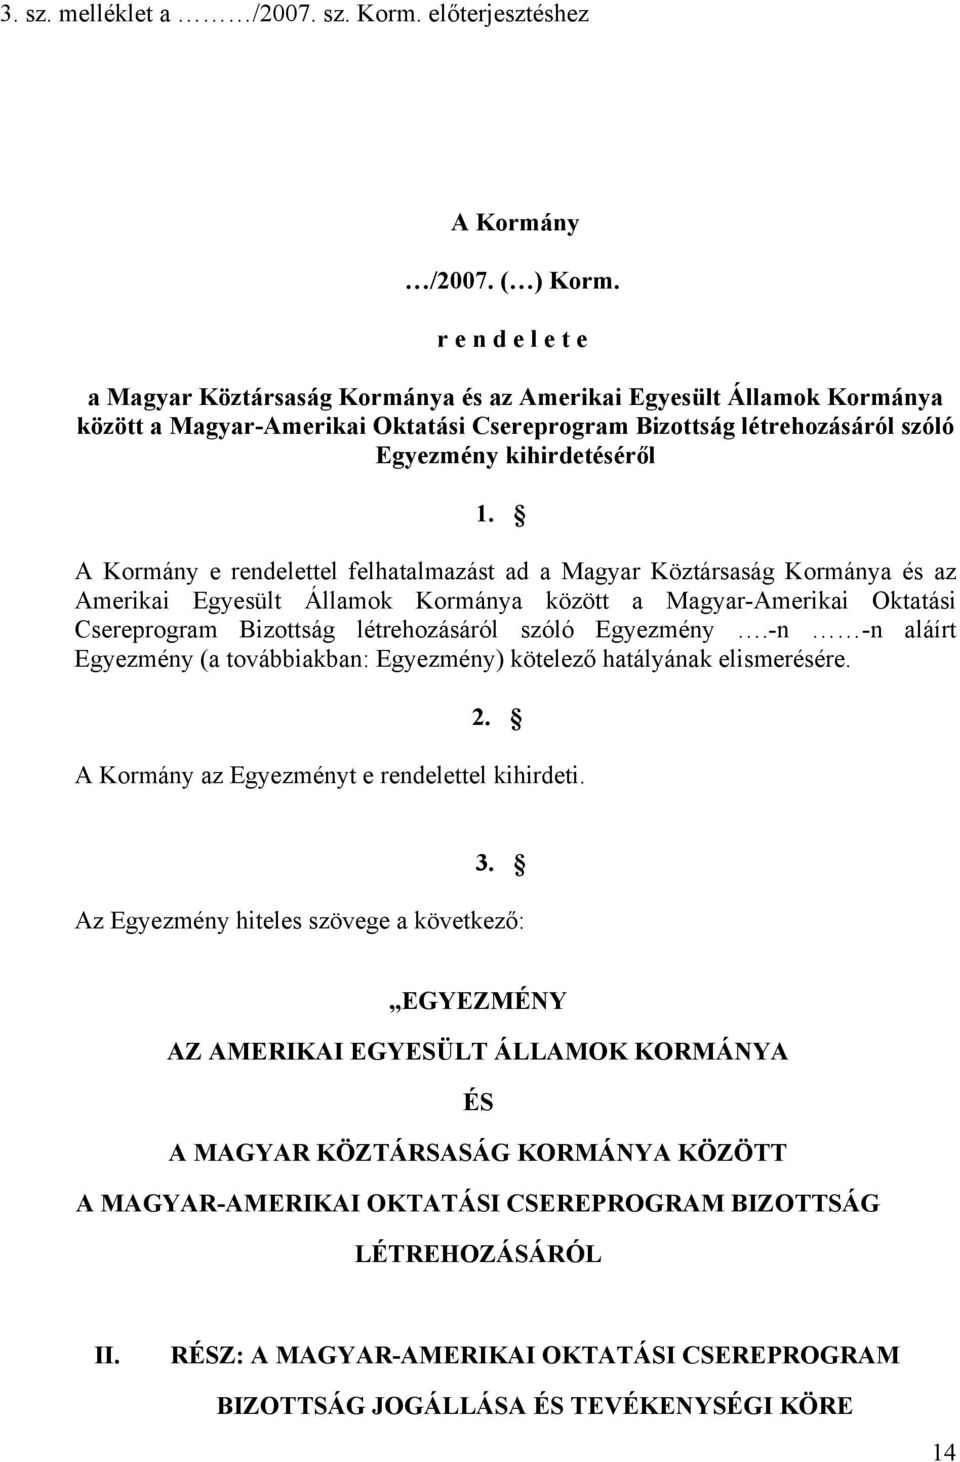 A Kormány e rendelettel felhatalmazást ad a Magyar Köztársaság Kormánya és az Amerikai Egyesült Államok Kormánya között a Magyar-Amerikai Oktatási Csereprogram Bizottság létrehozásáról szóló